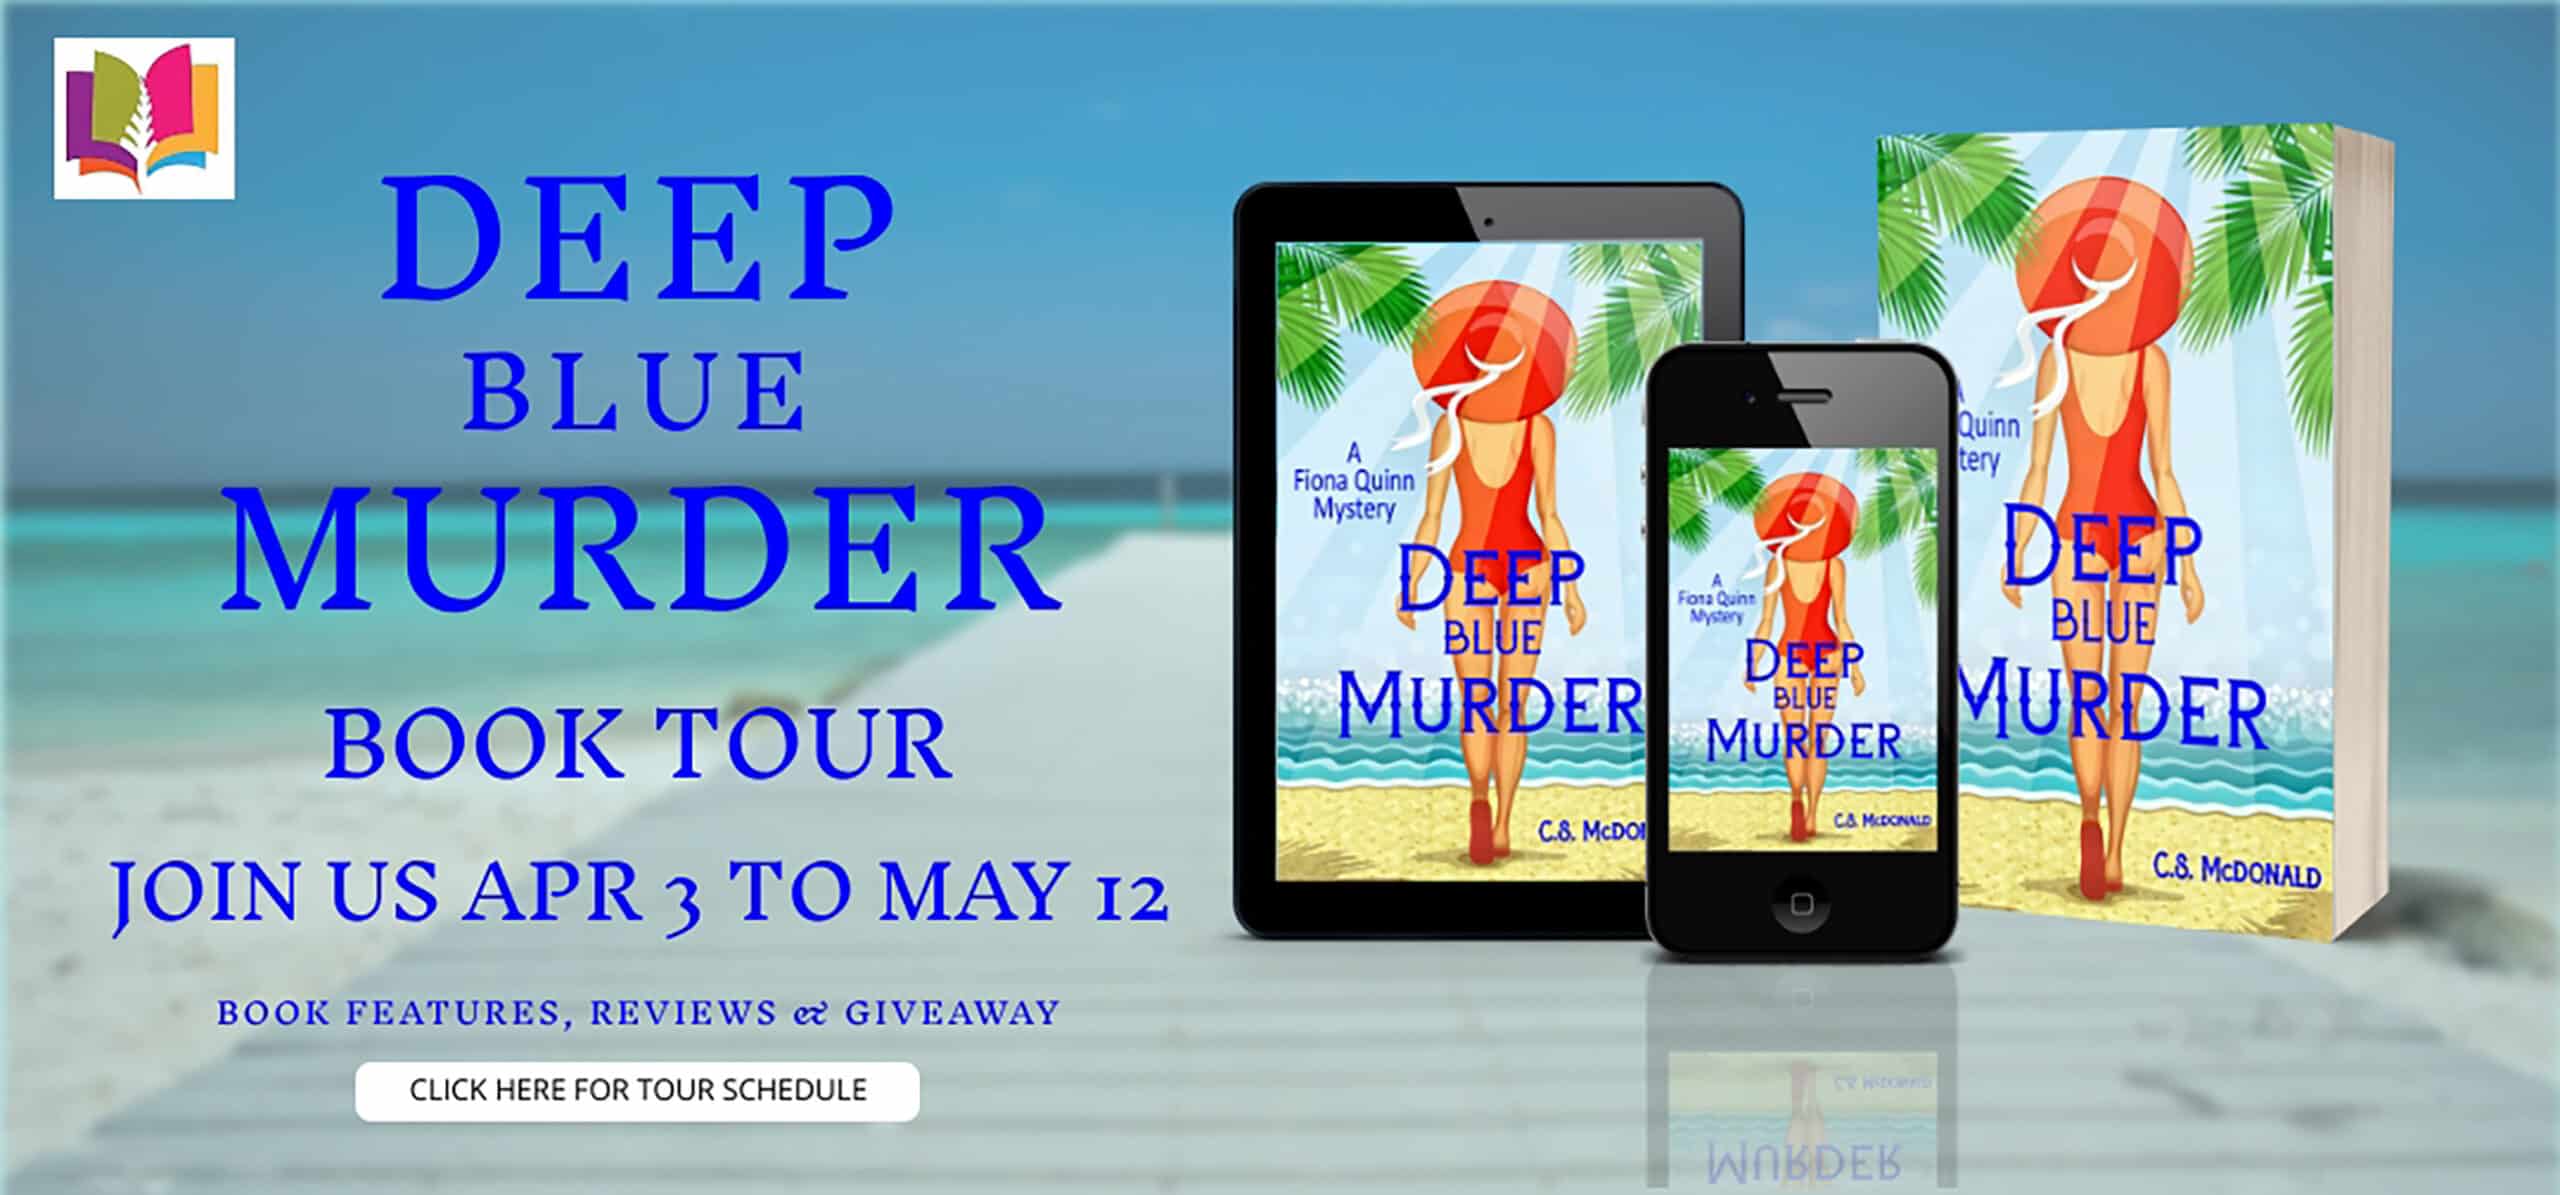 Deep Blue Murder (Fiona Quinn Mysteries #11) by C.S. McDonald | Book Review